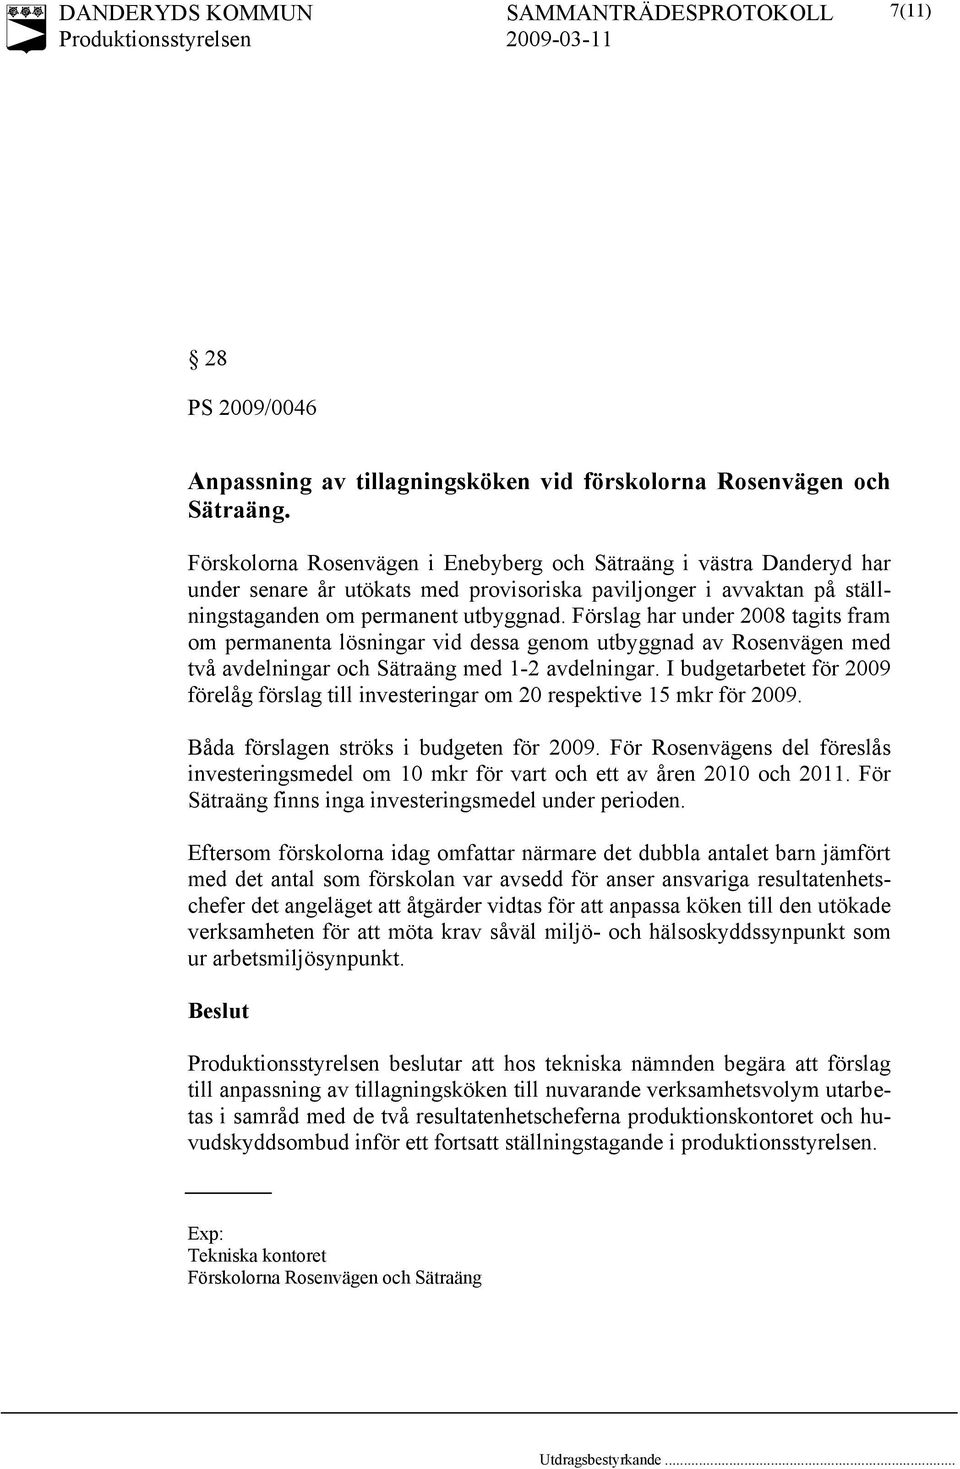 Förslag har under 2008 tagits fram om permanenta lösningar vid dessa genom utbyggnad av Rosenvägen med två avdelningar och Sätraäng med 1-2 avdelningar.